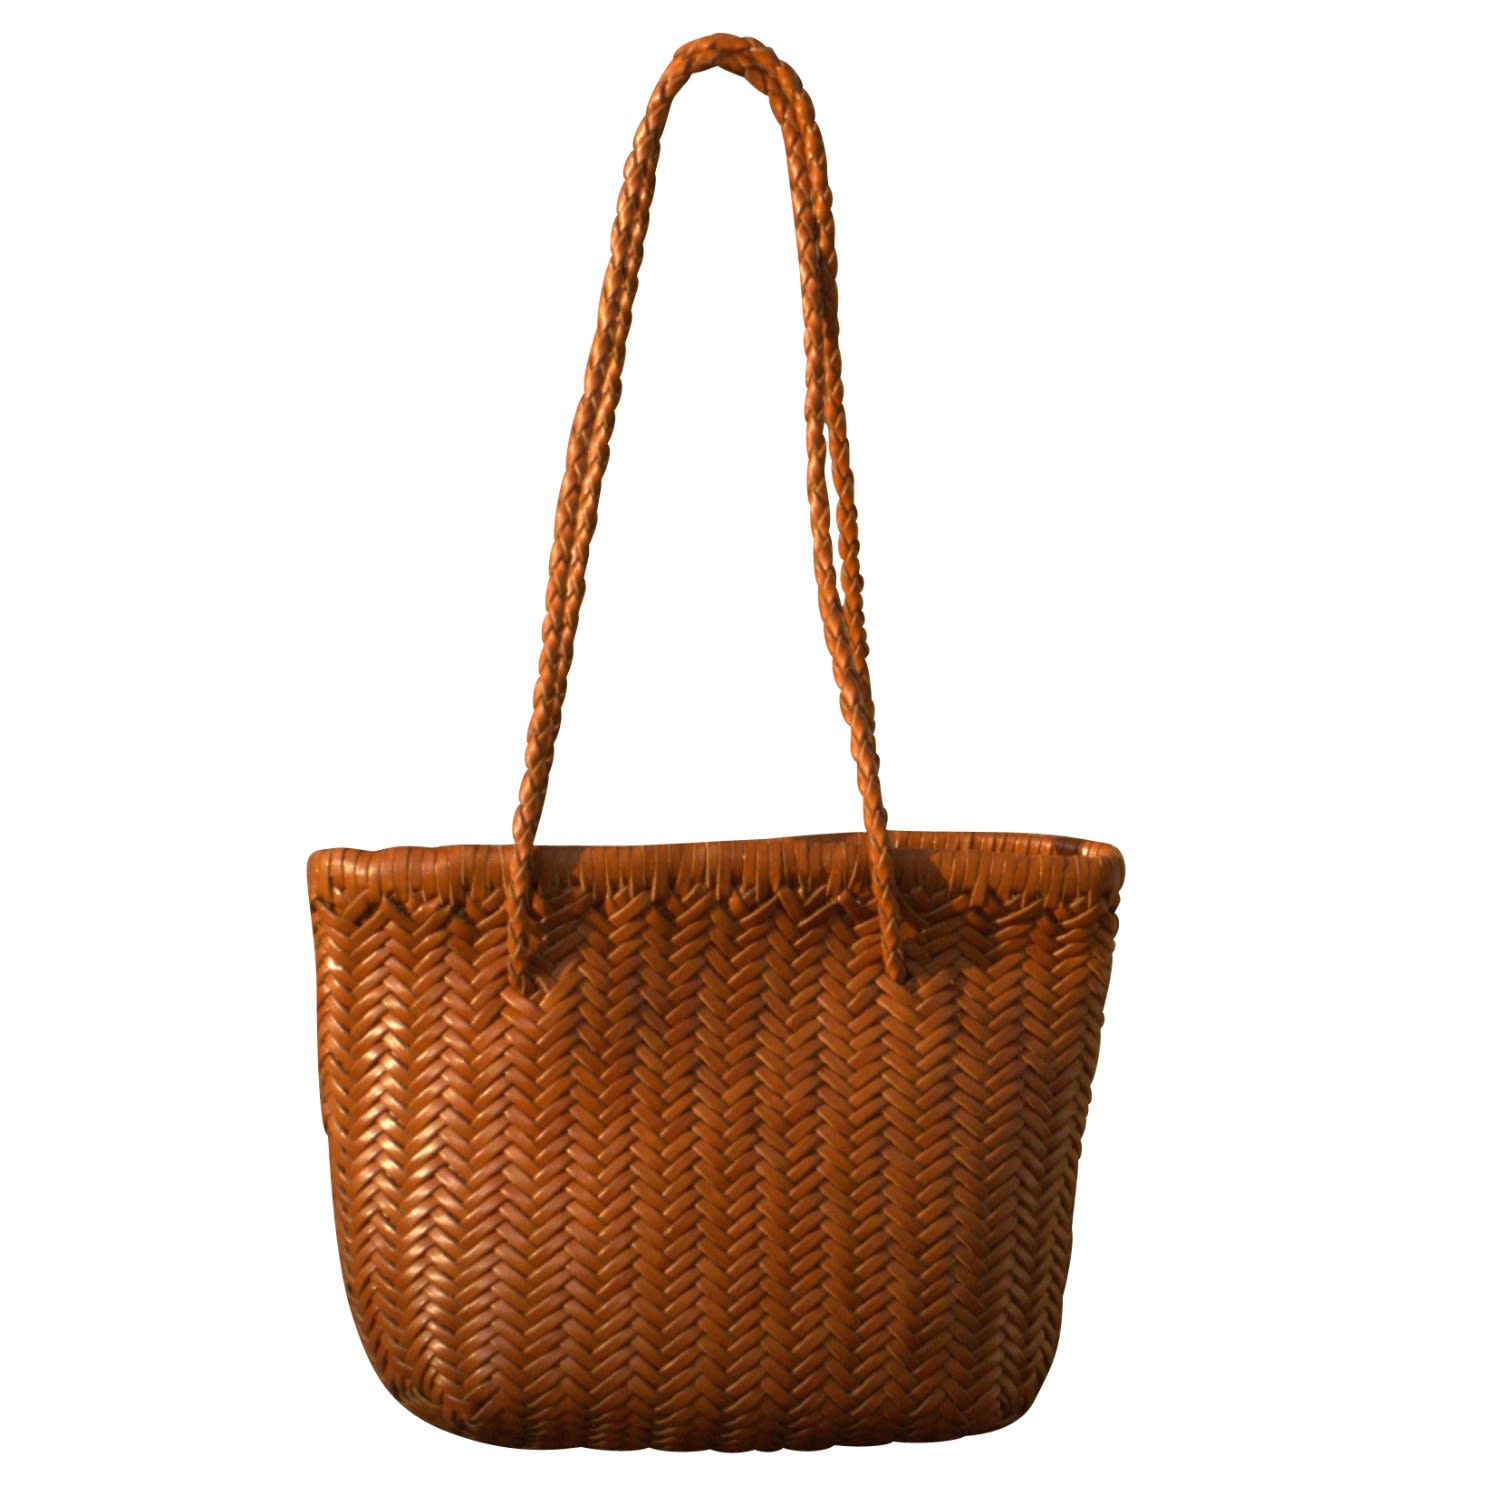 Women’s Brown Zigzag Woven Leather Handbag In Small Size â€˜Carla’ - Tan Rimini